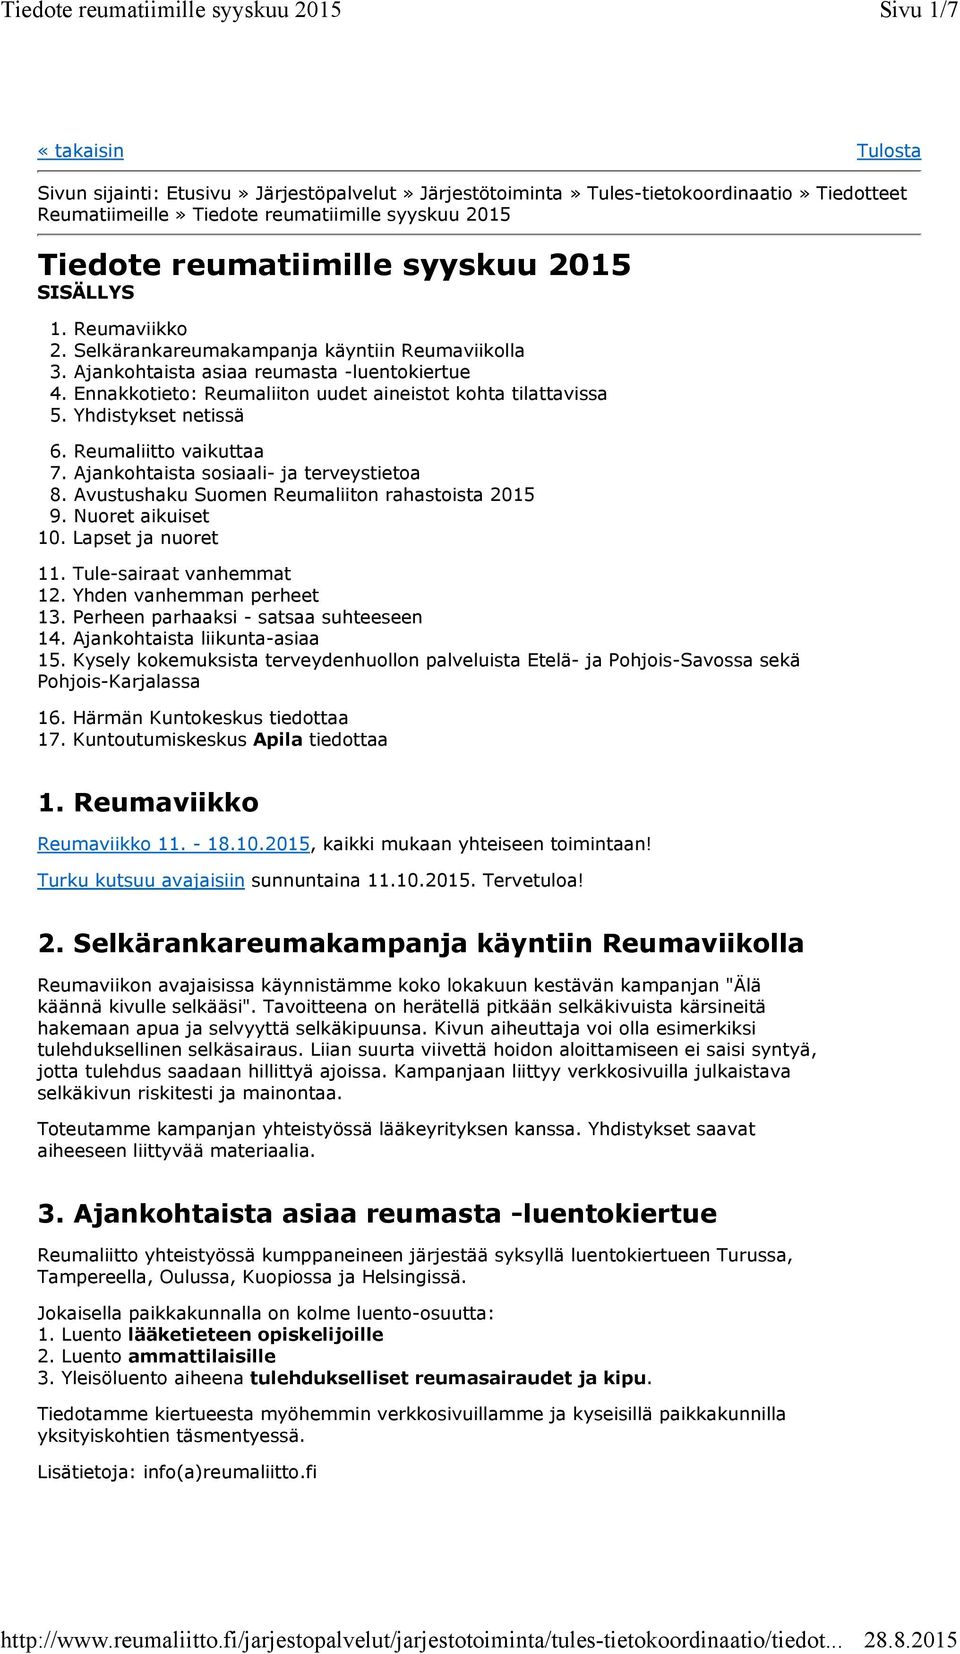 Yhdistykset netissä 6. Reumaliitto vaikuttaa 7. Ajankohtaista sosiaali- ja terveystietoa 8. Avustushaku Suomen Reumaliiton rahastoista 2015 9. Nuoret aikuiset 10. Lapset ja nuoret 11.